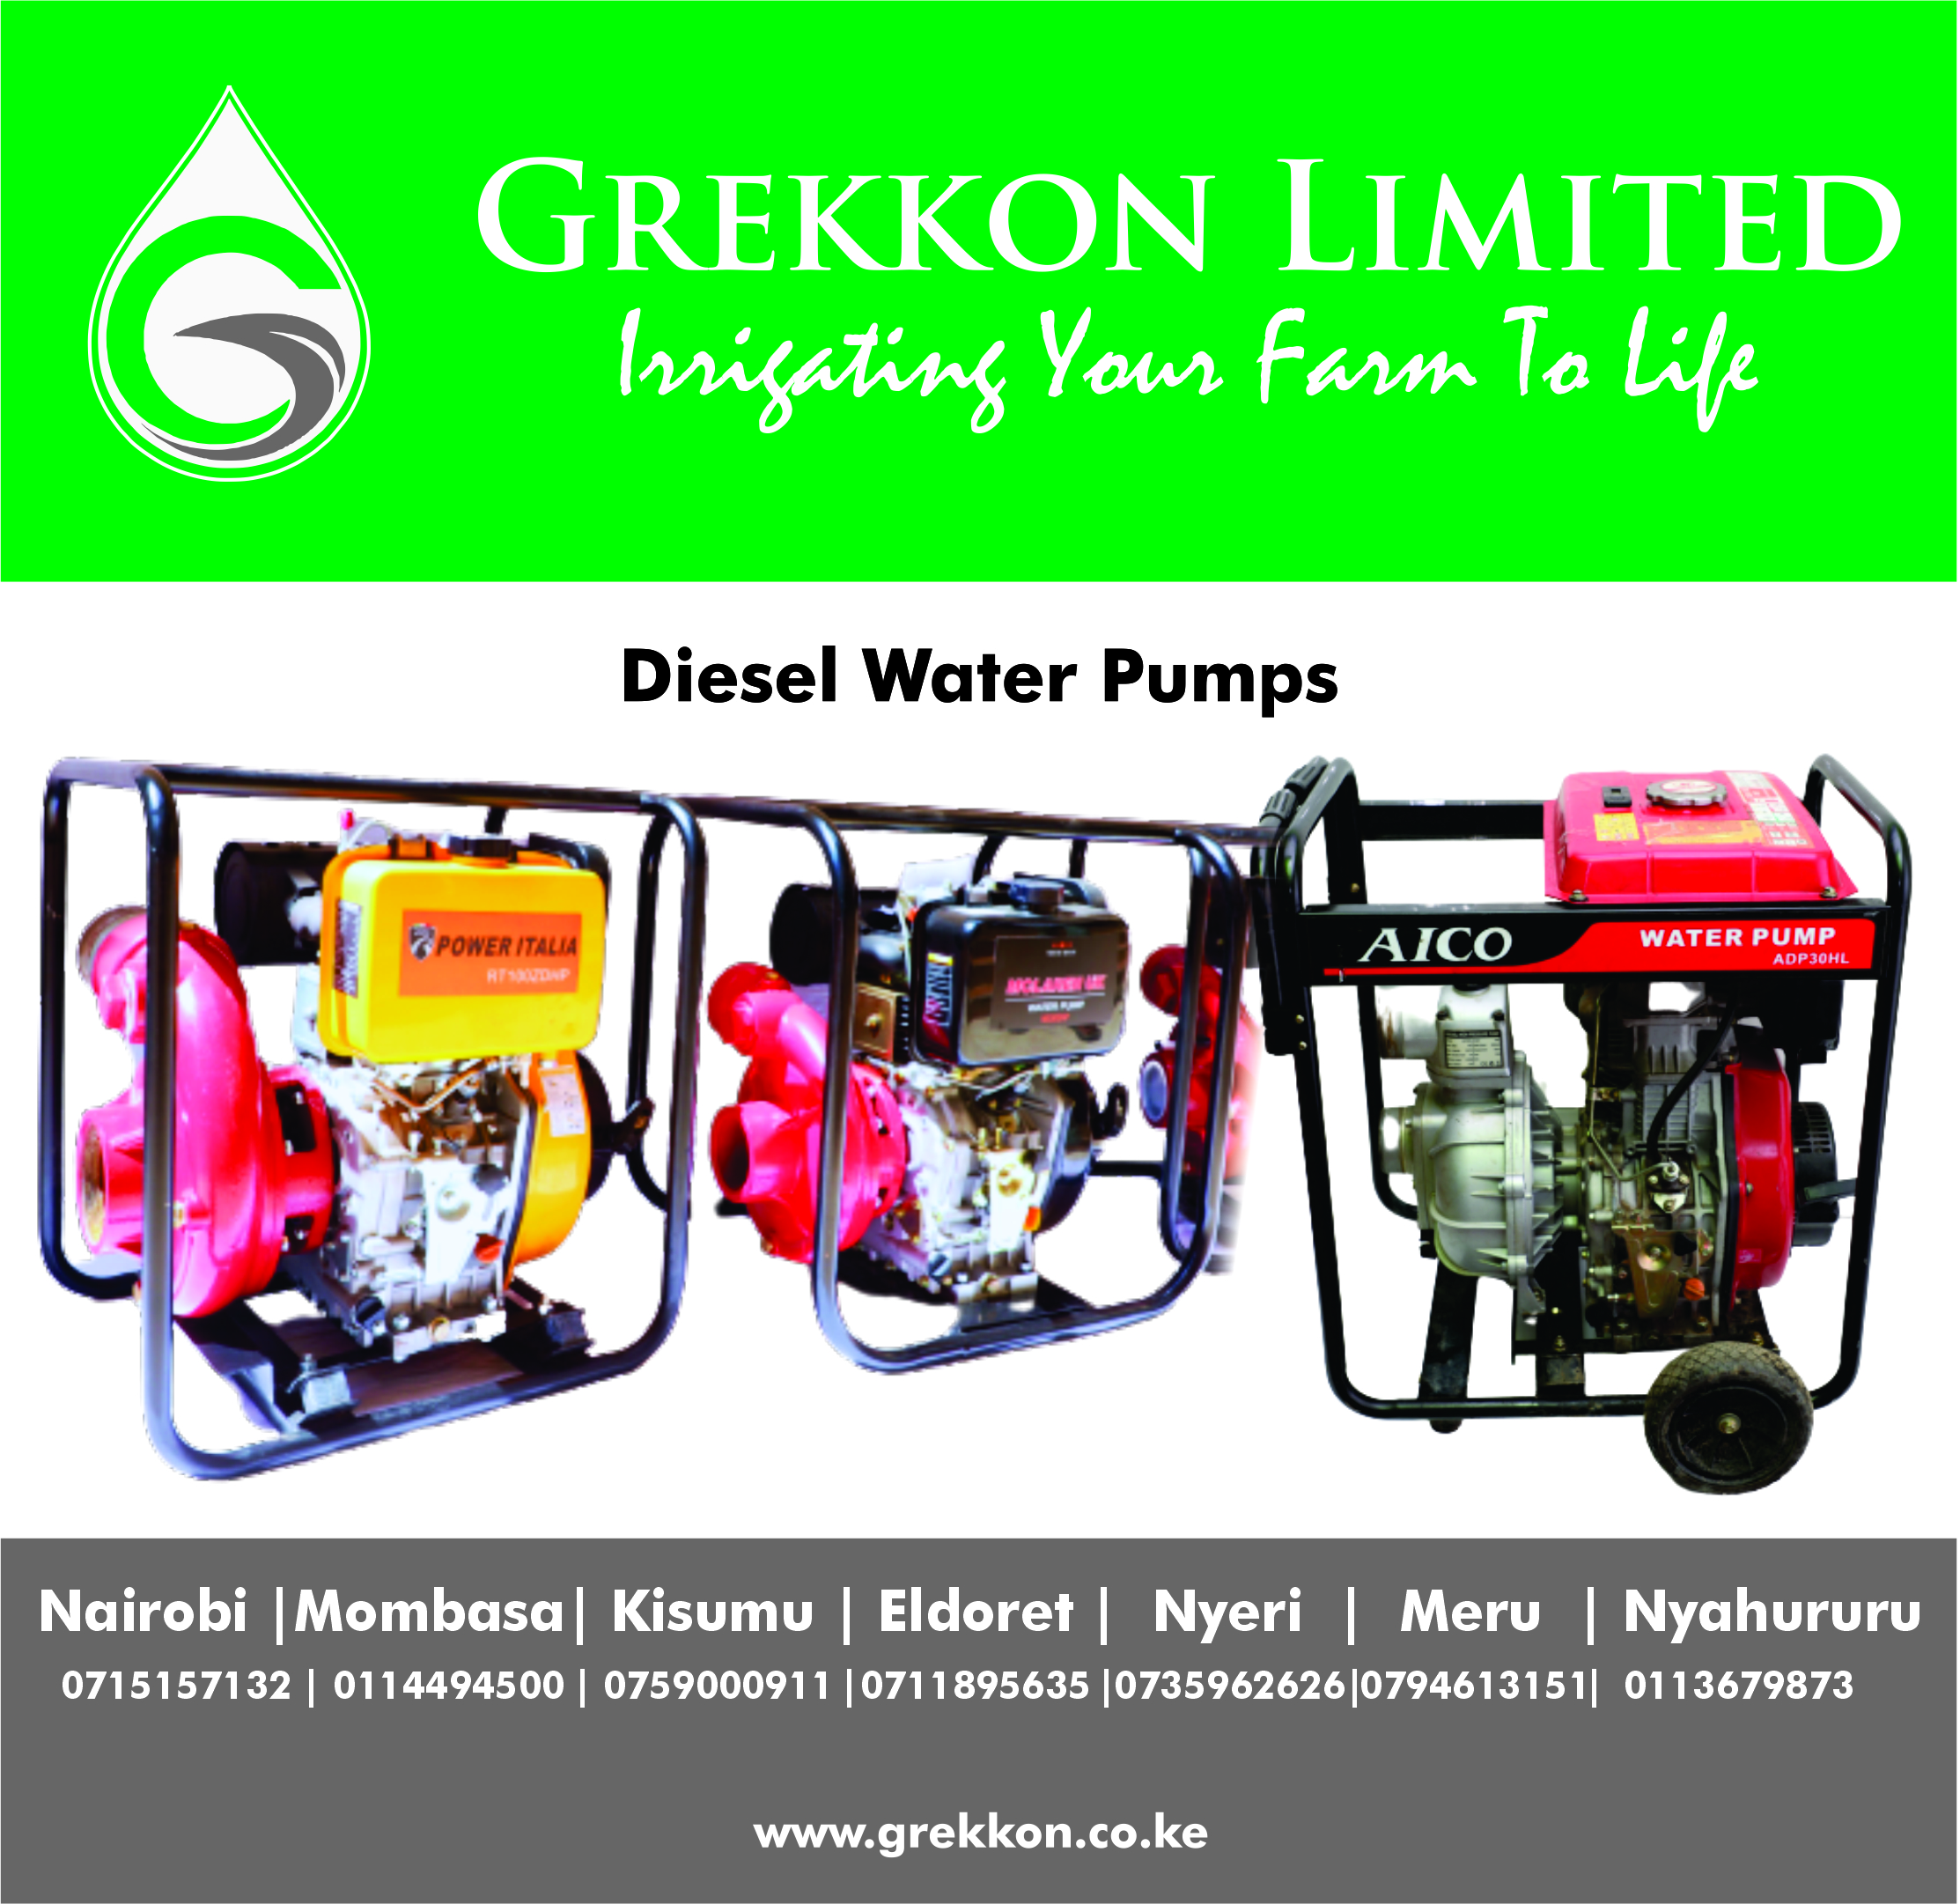 Diesel water pump prices in Kenya 